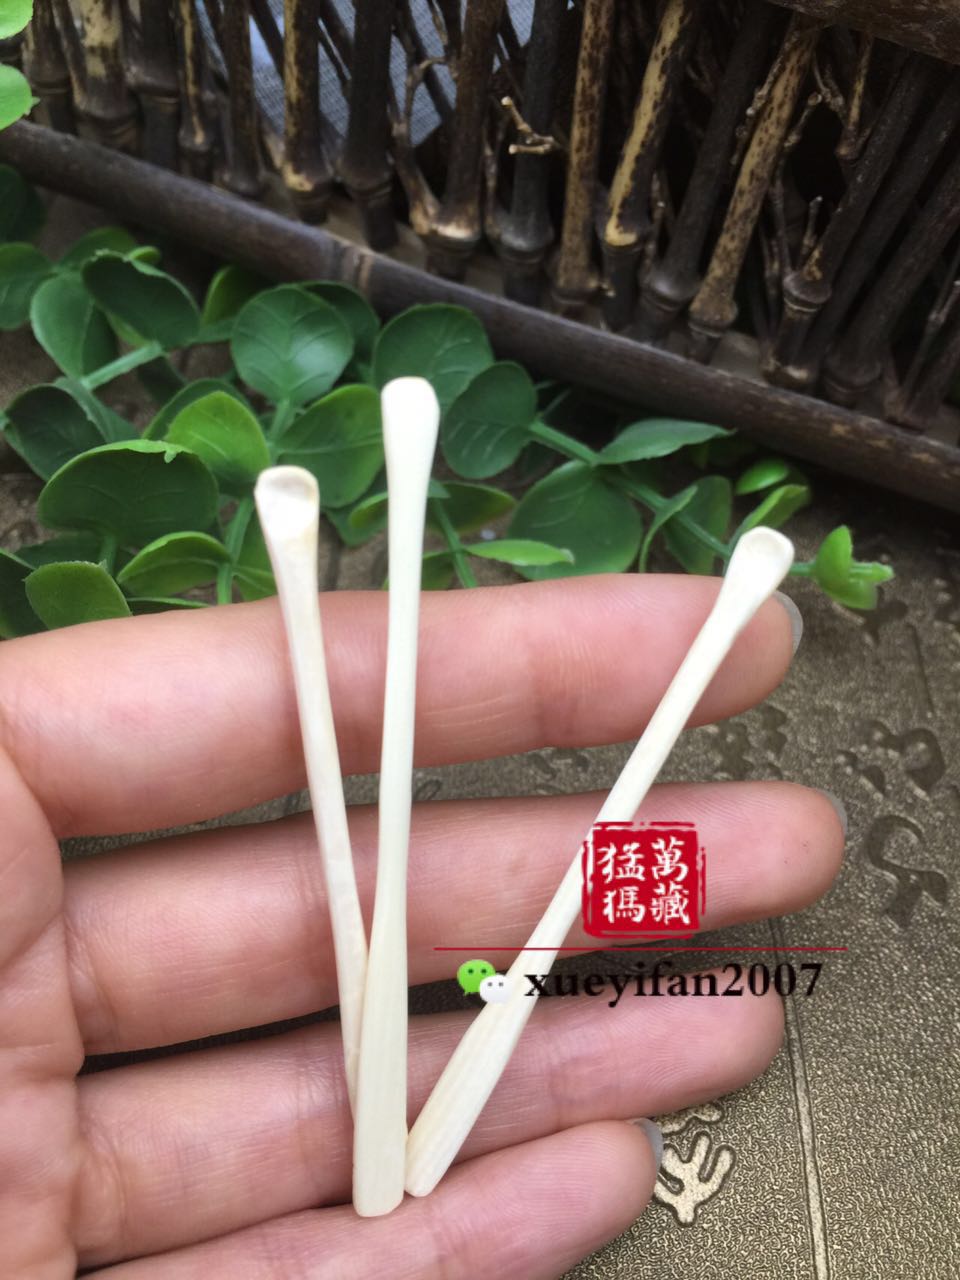 天然猛犸象牙制品竹节掏耳勺牙雕随机发货支持检测折扣优惠信息